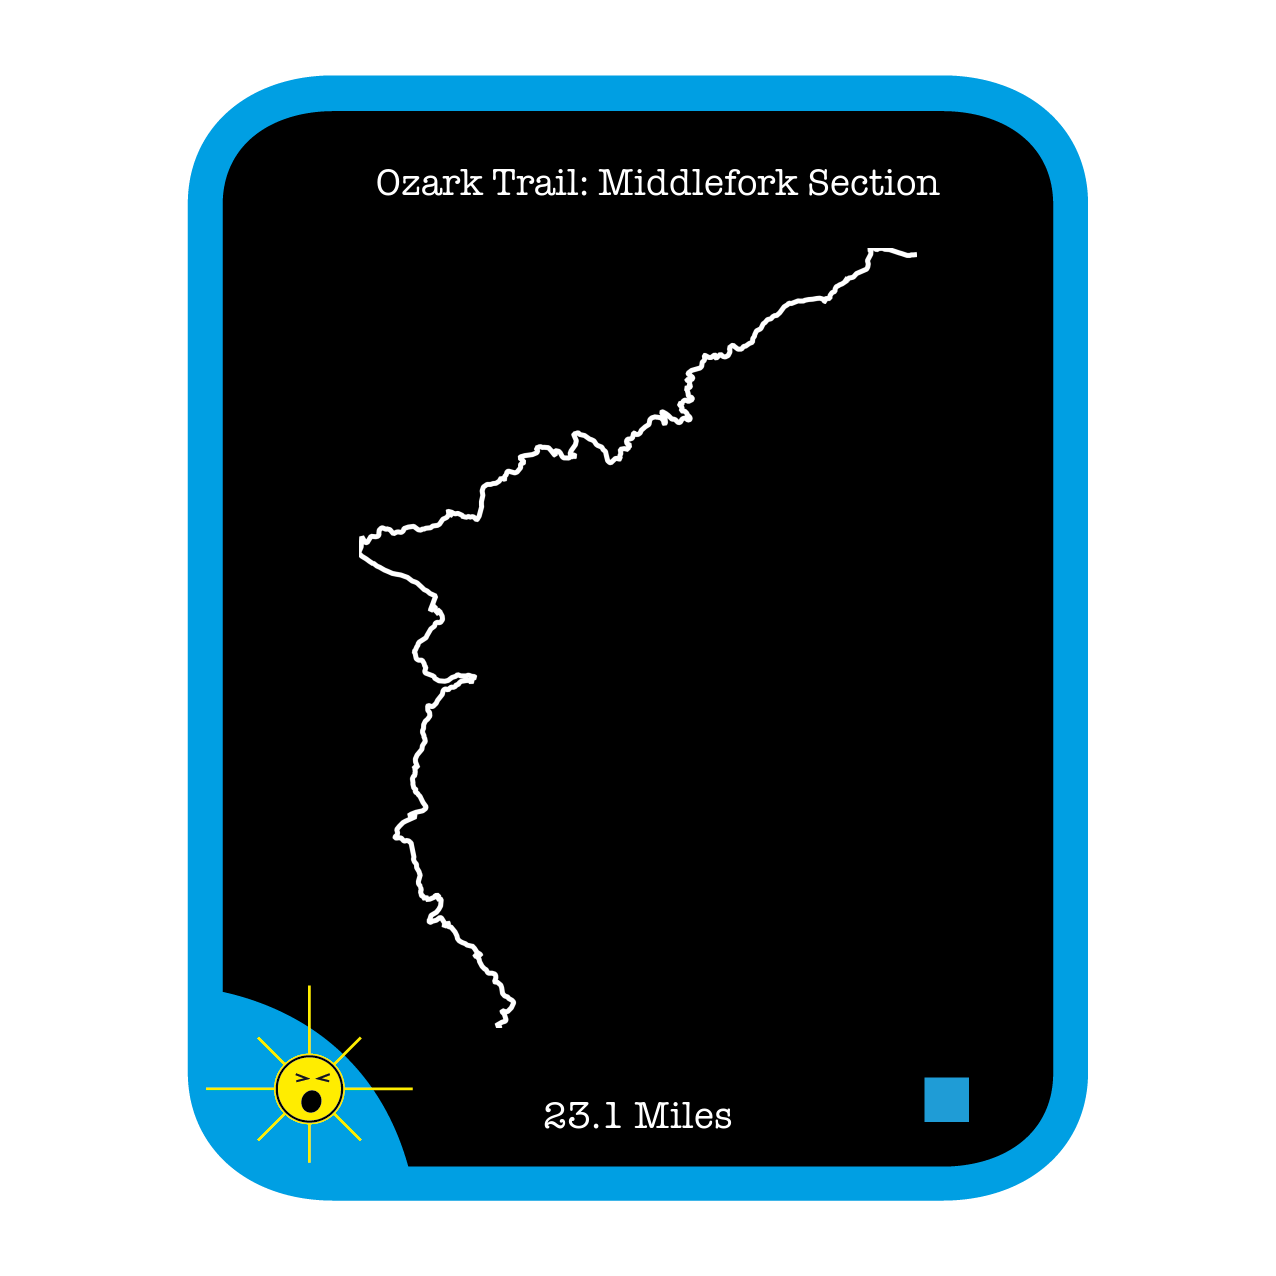 Ozark Trail: Middlefork Section